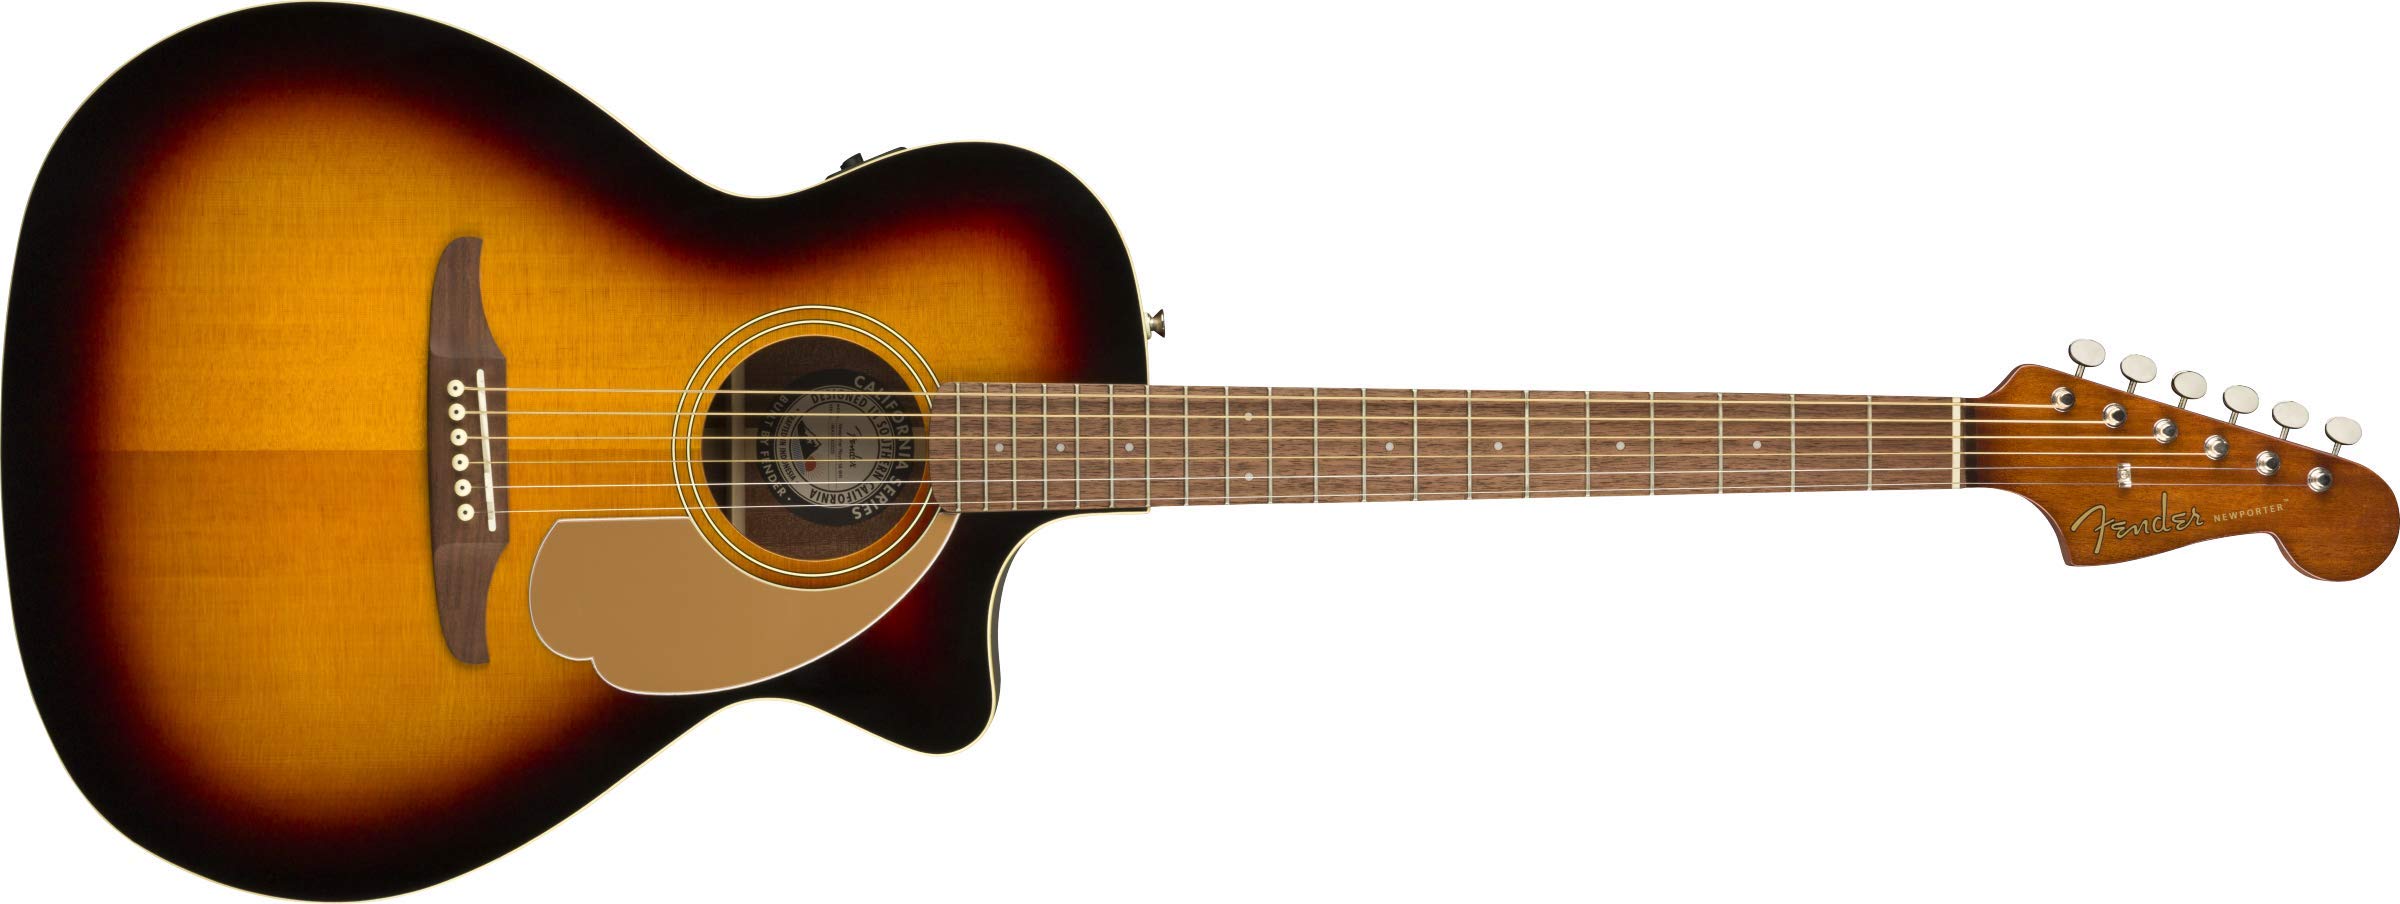 Fender 뉴포터 플레이어 어쿠스틱 기타 - 선버스트...